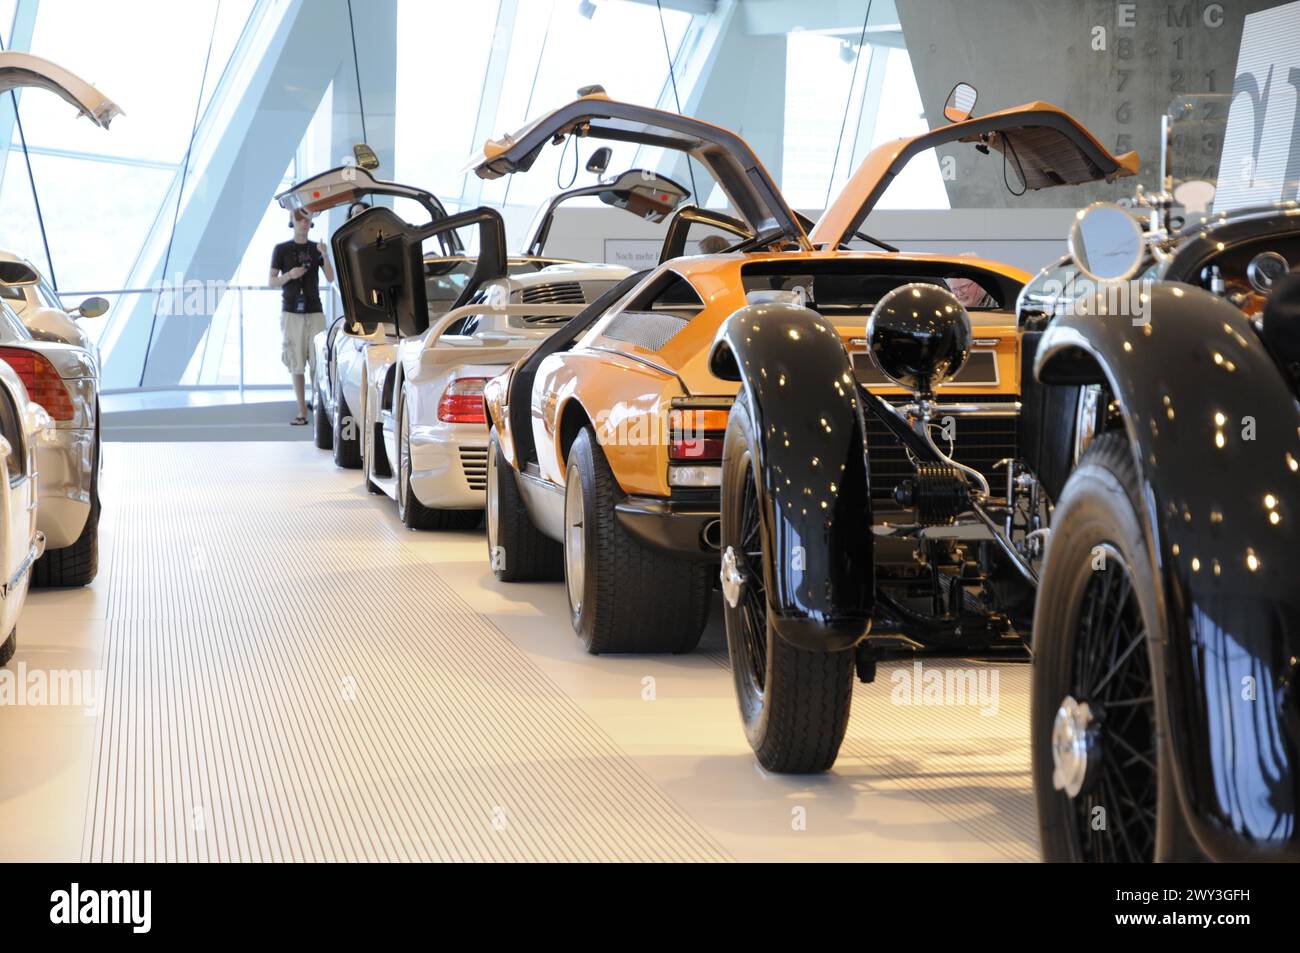 Musée, Musée Mercedes-Benz, Stuttgart, rangée de voitures de sport Mercedes-Benz et de voitures classiques avec des portes en goélette dans une salle d'exposition, Musée Mercedes-Benz Banque D'Images